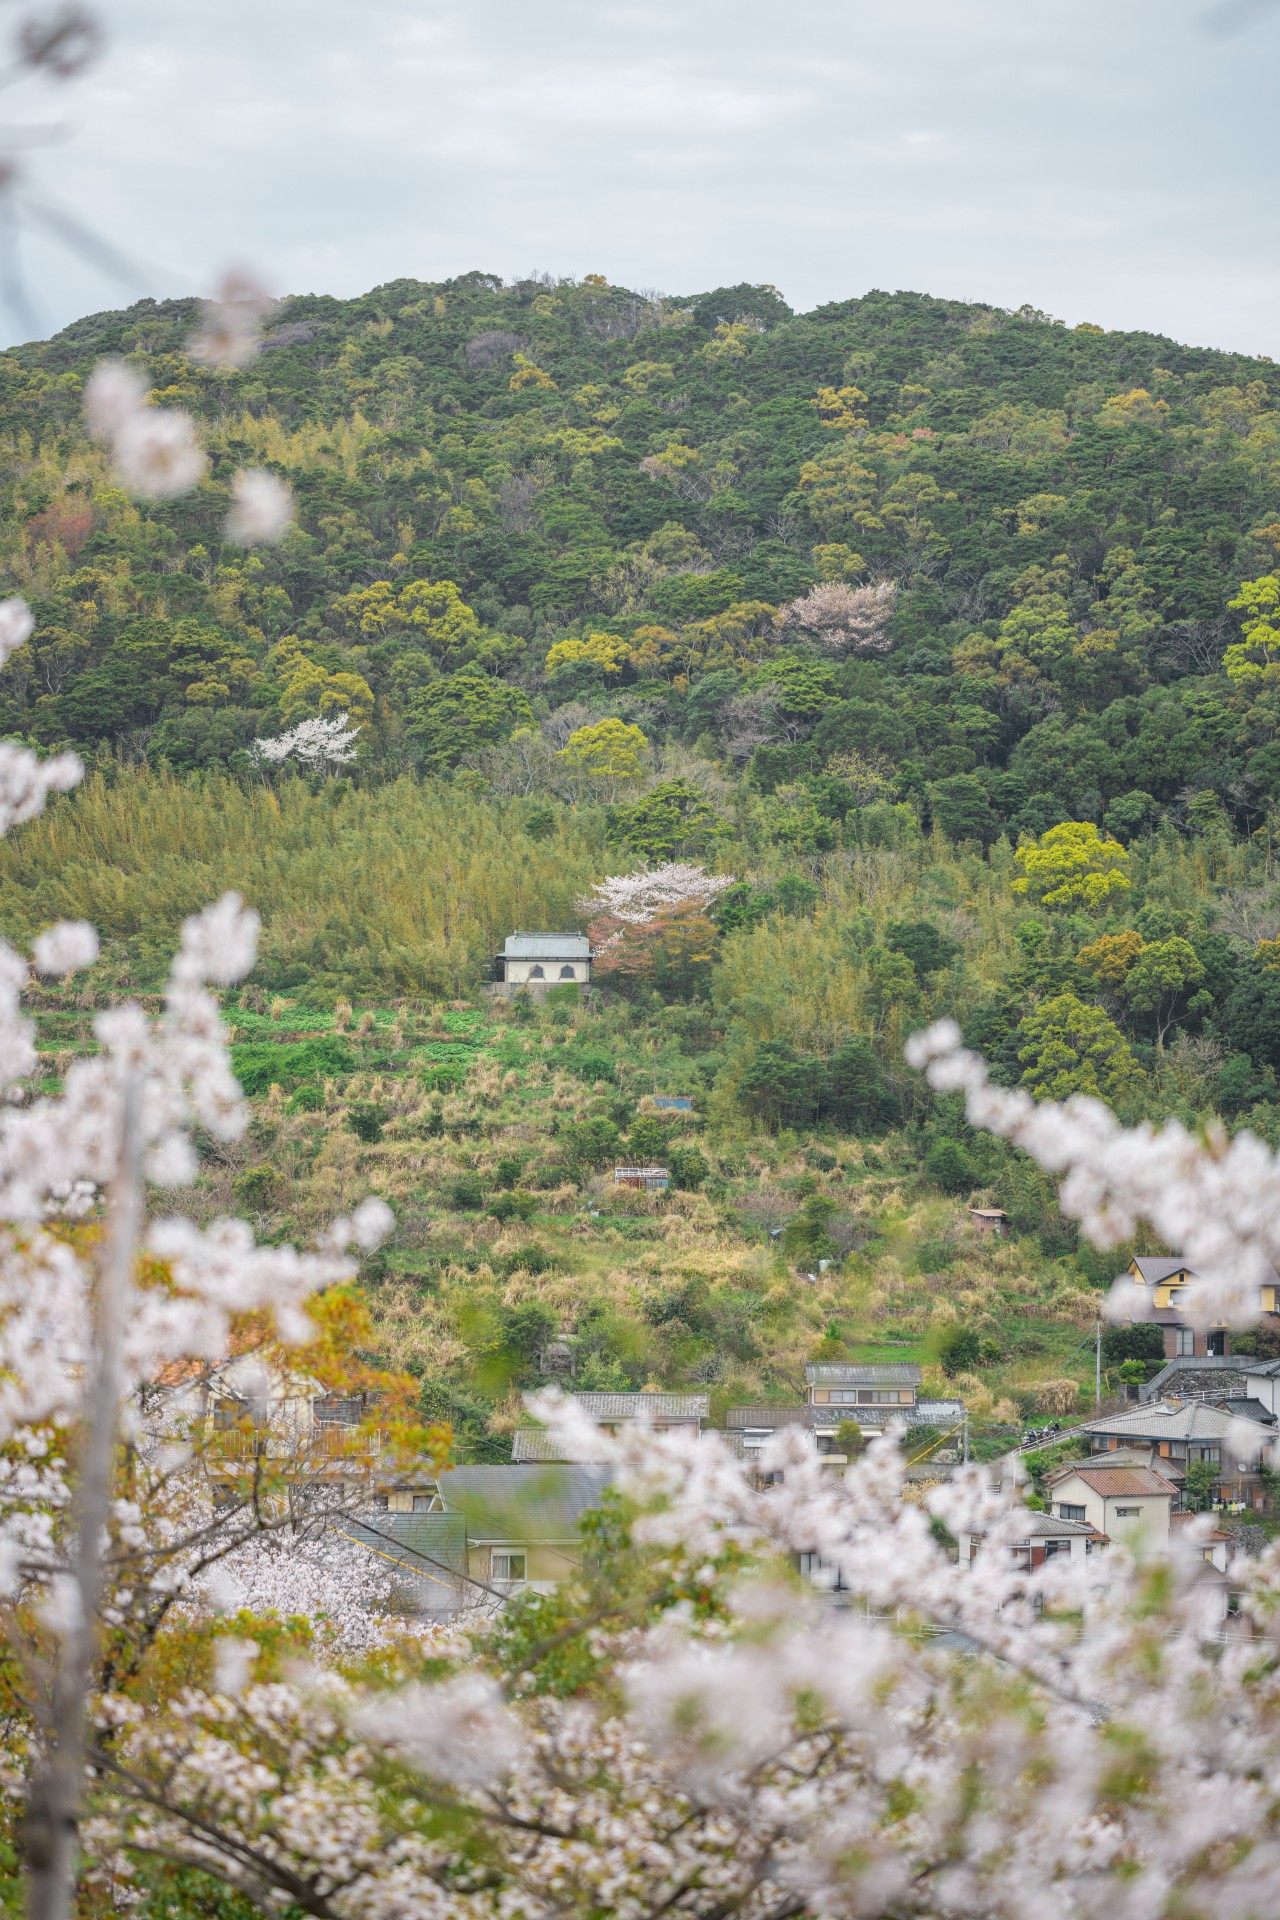 立山公園の桜